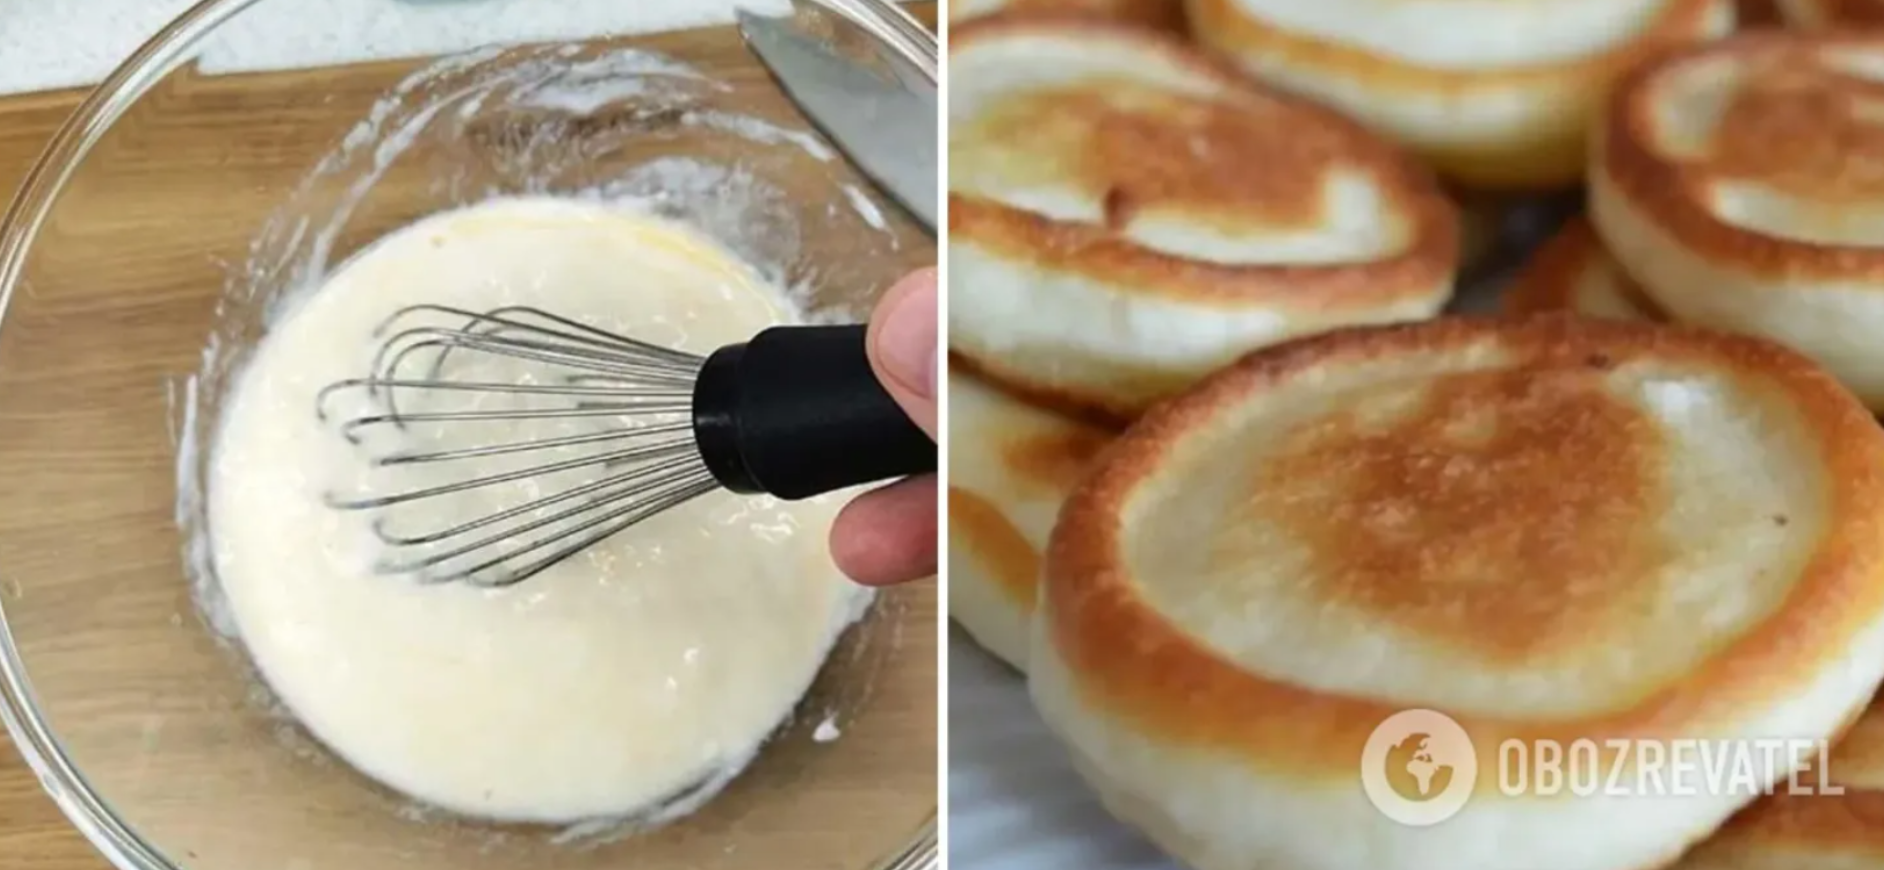 Dough for pancakes